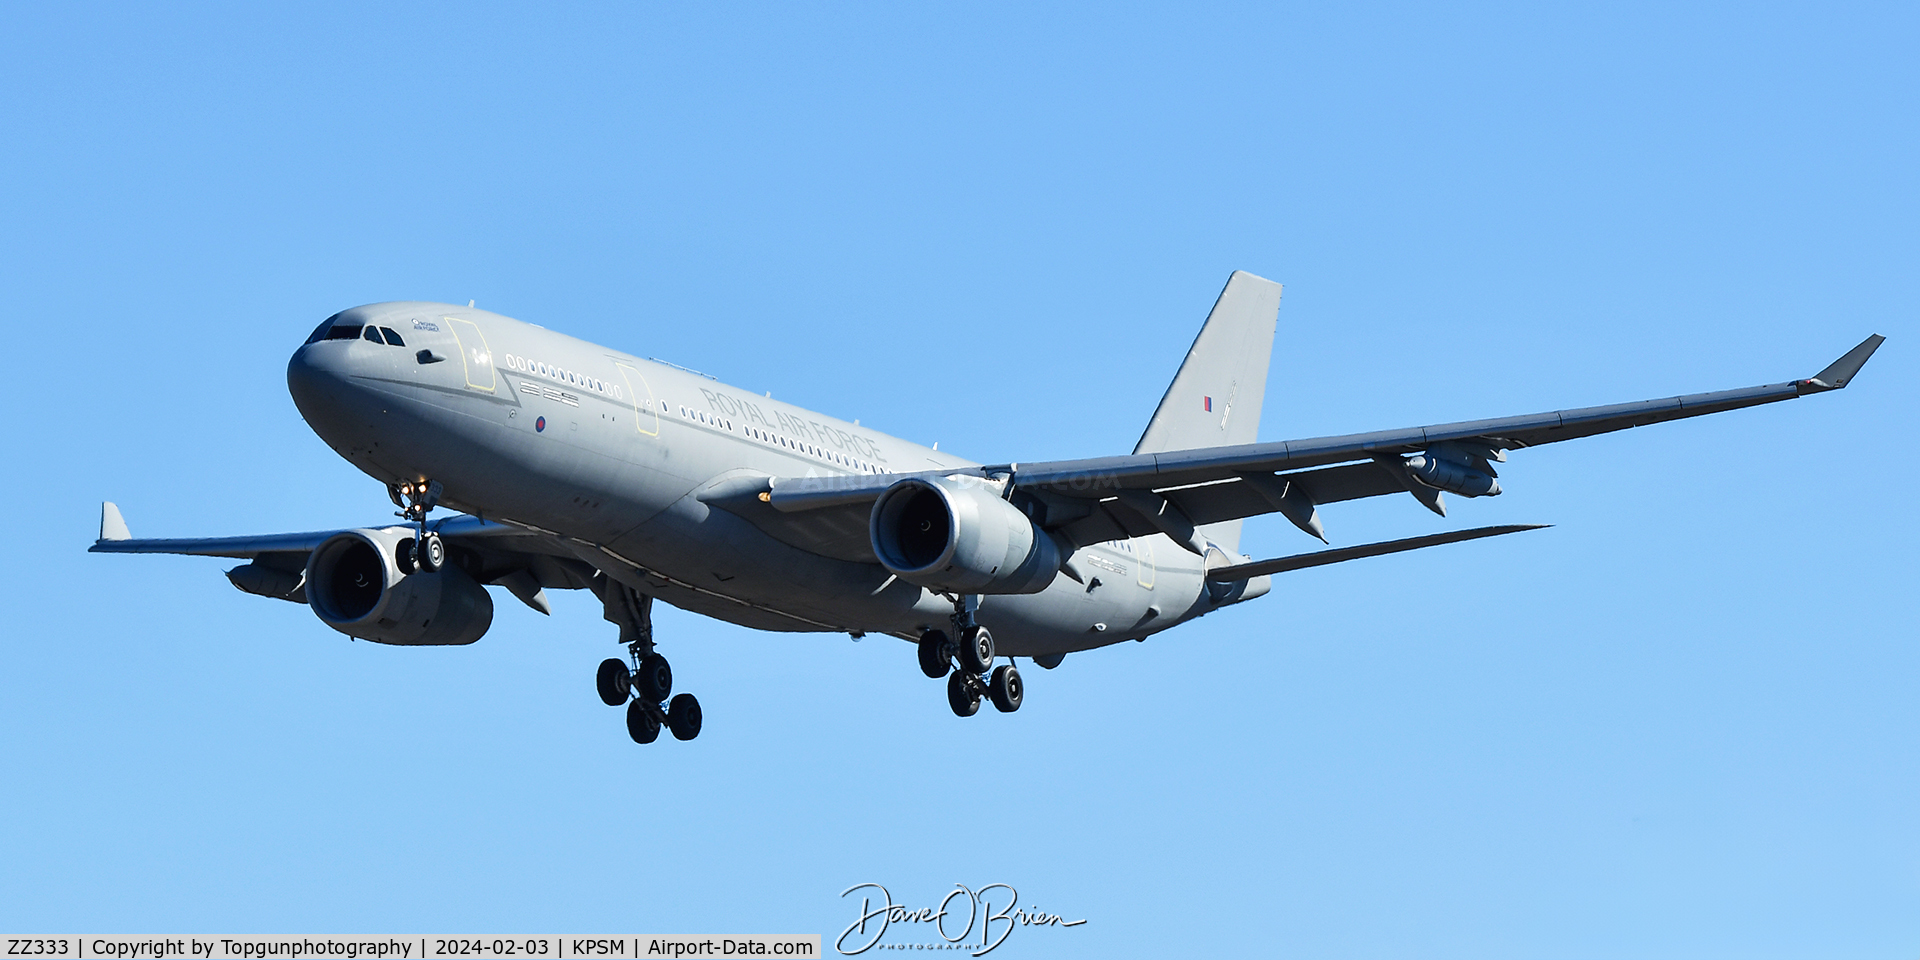 ZZ333, 2012 Airbus KC3 Voyager (A330-243MRTT) C/N 1312, ASCOT9301 inbound RW34